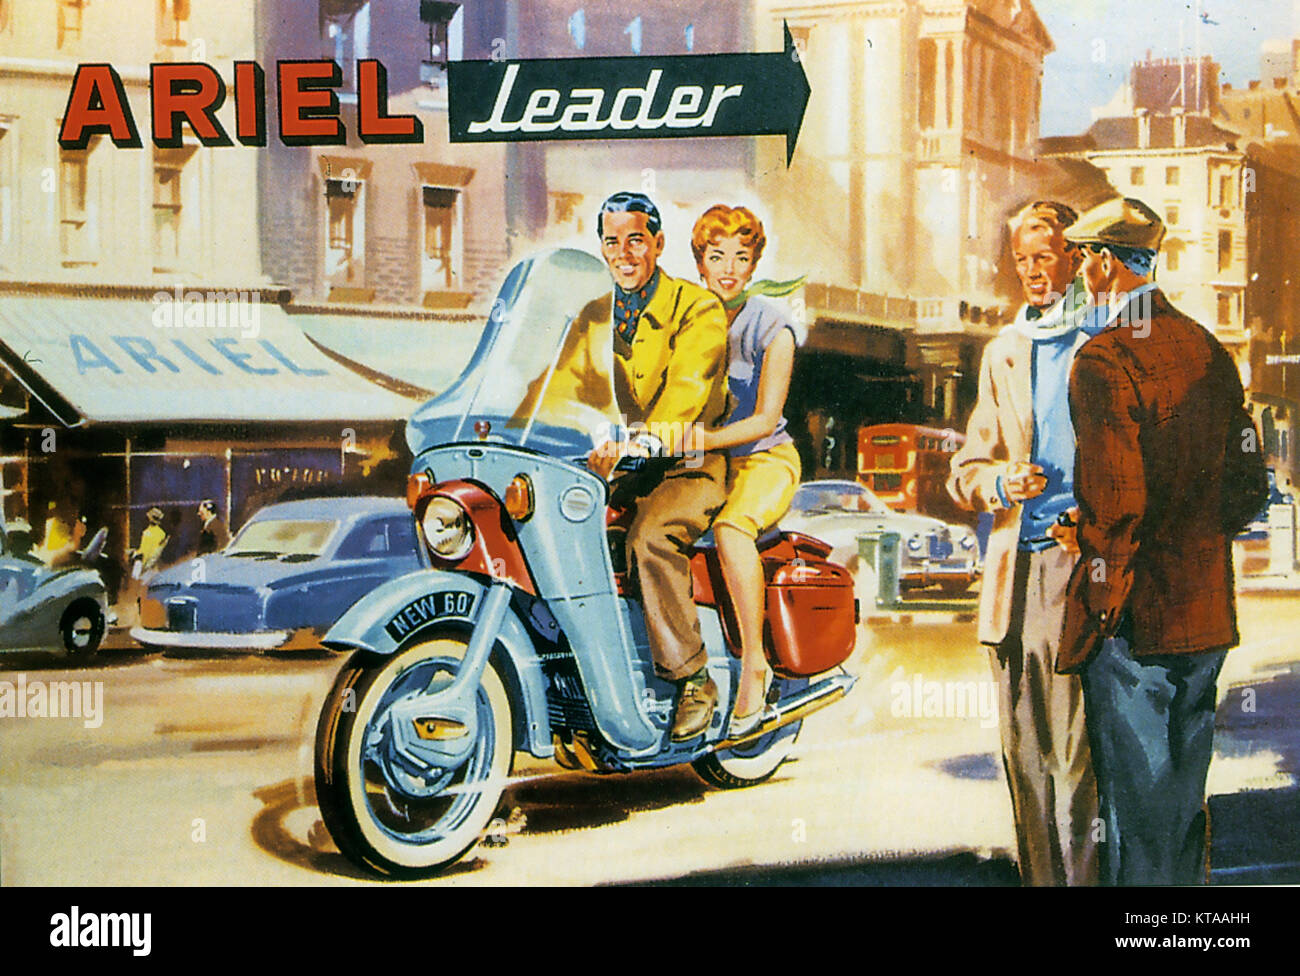 ARIEL MOTOCICLI UN 1959 spot per la 250cc a due tempi modello Leader Foto Stock